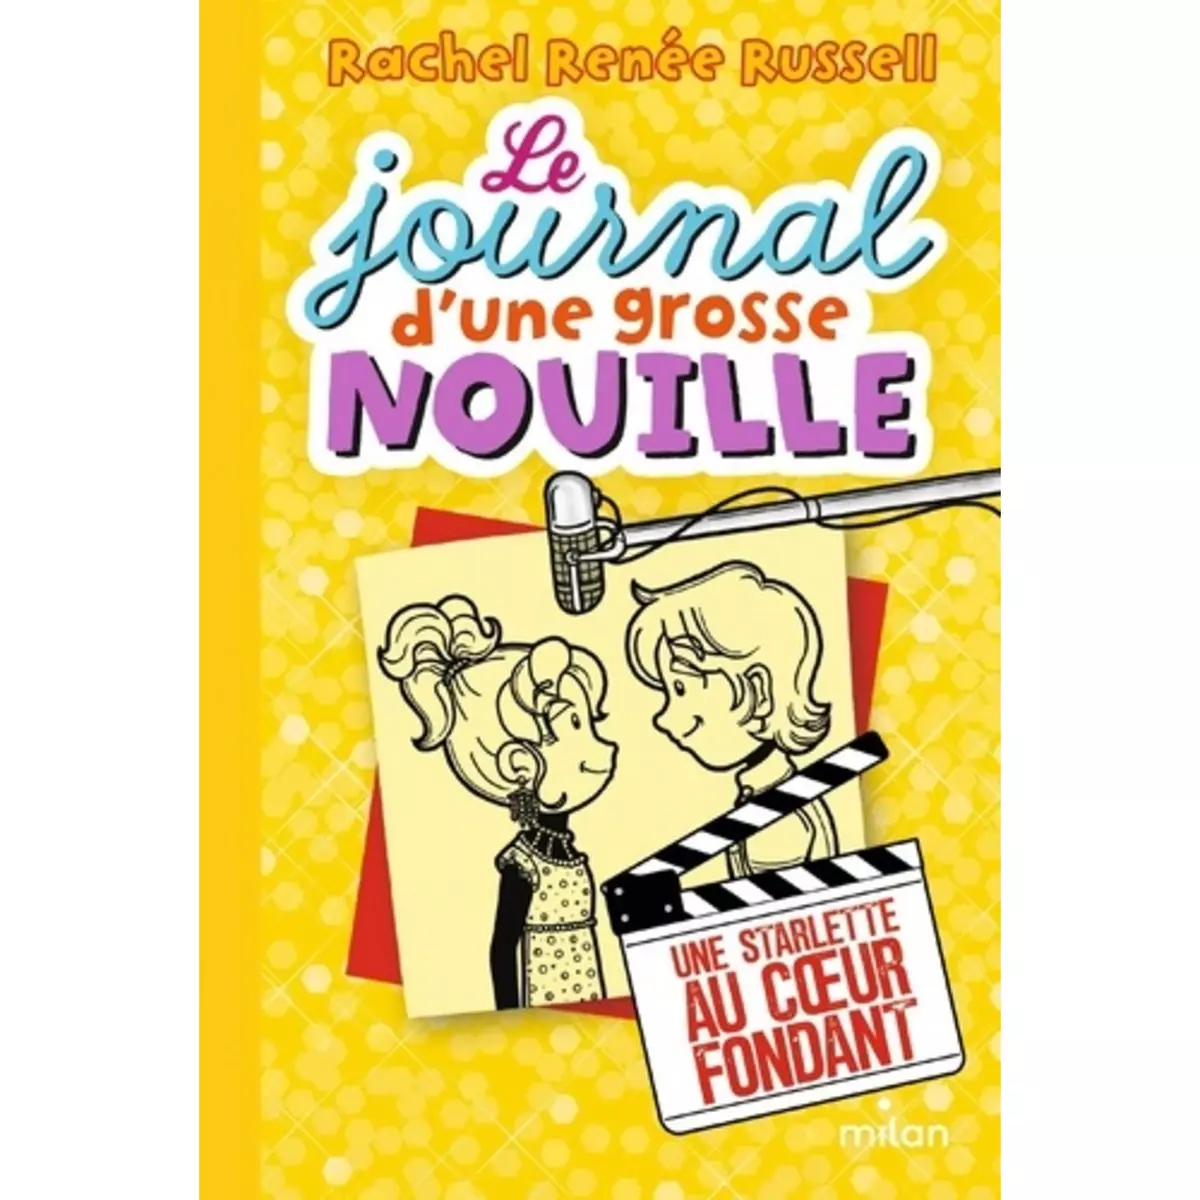  LE JOURNAL D'UNE GROSSE NOUILLE TOME 7 : UNE STARLETTE AU COEUR FONDANT, Russell Rachel Renée